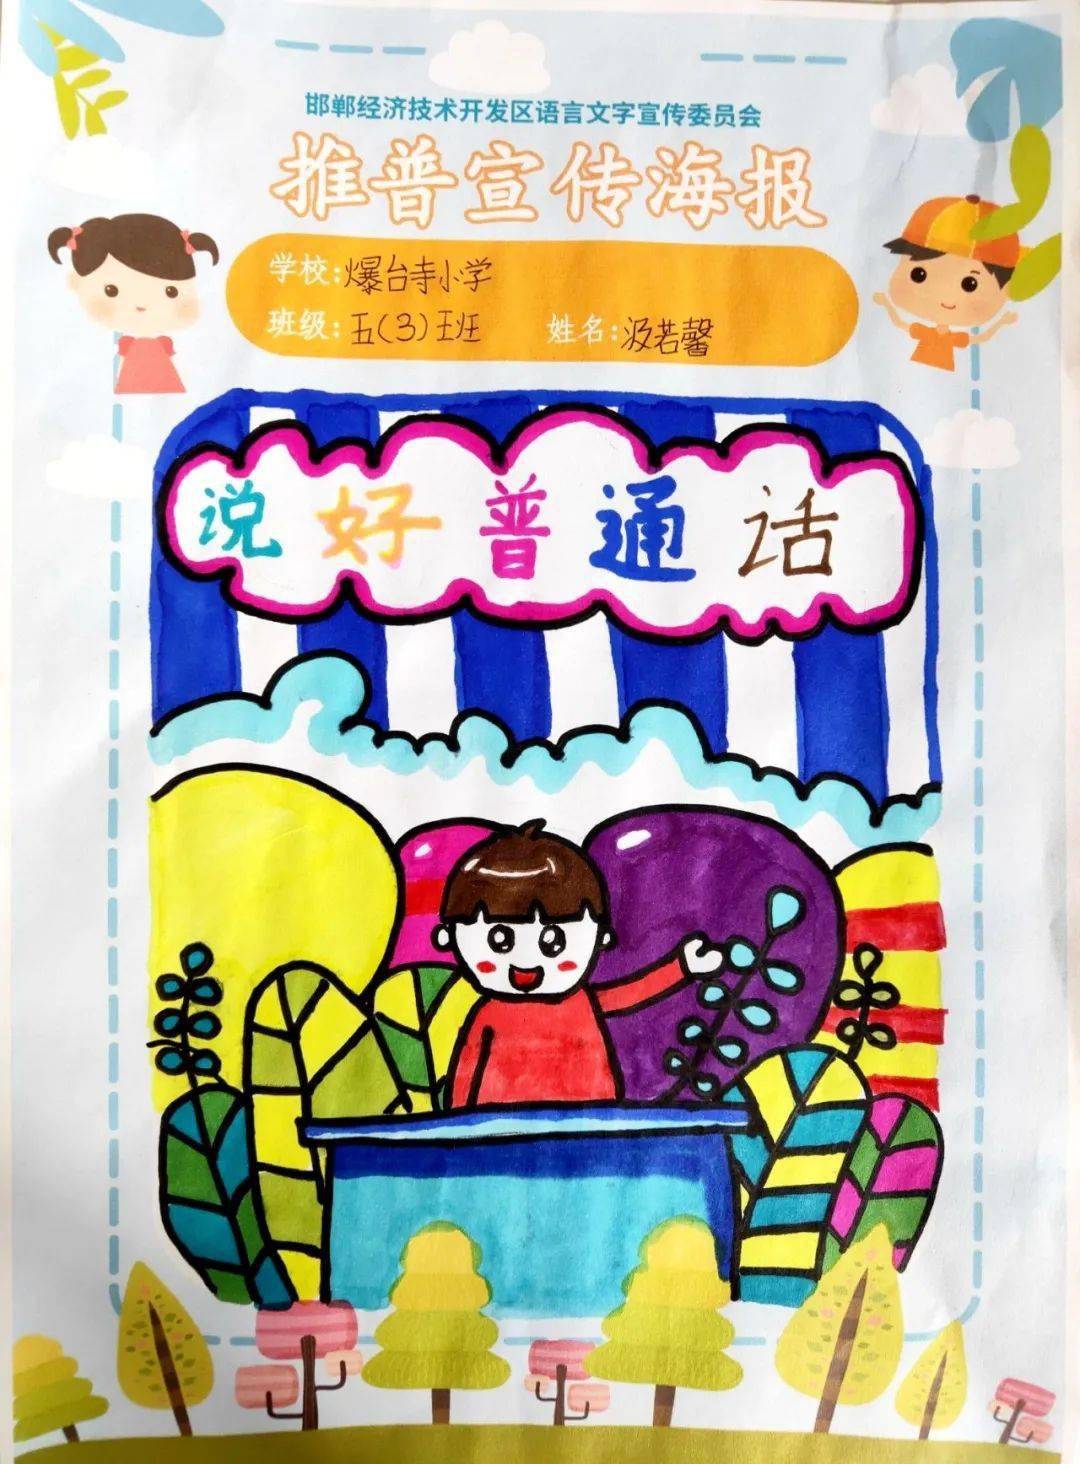 【语言文字】爆台寺小学开展推广普通话海报比赛